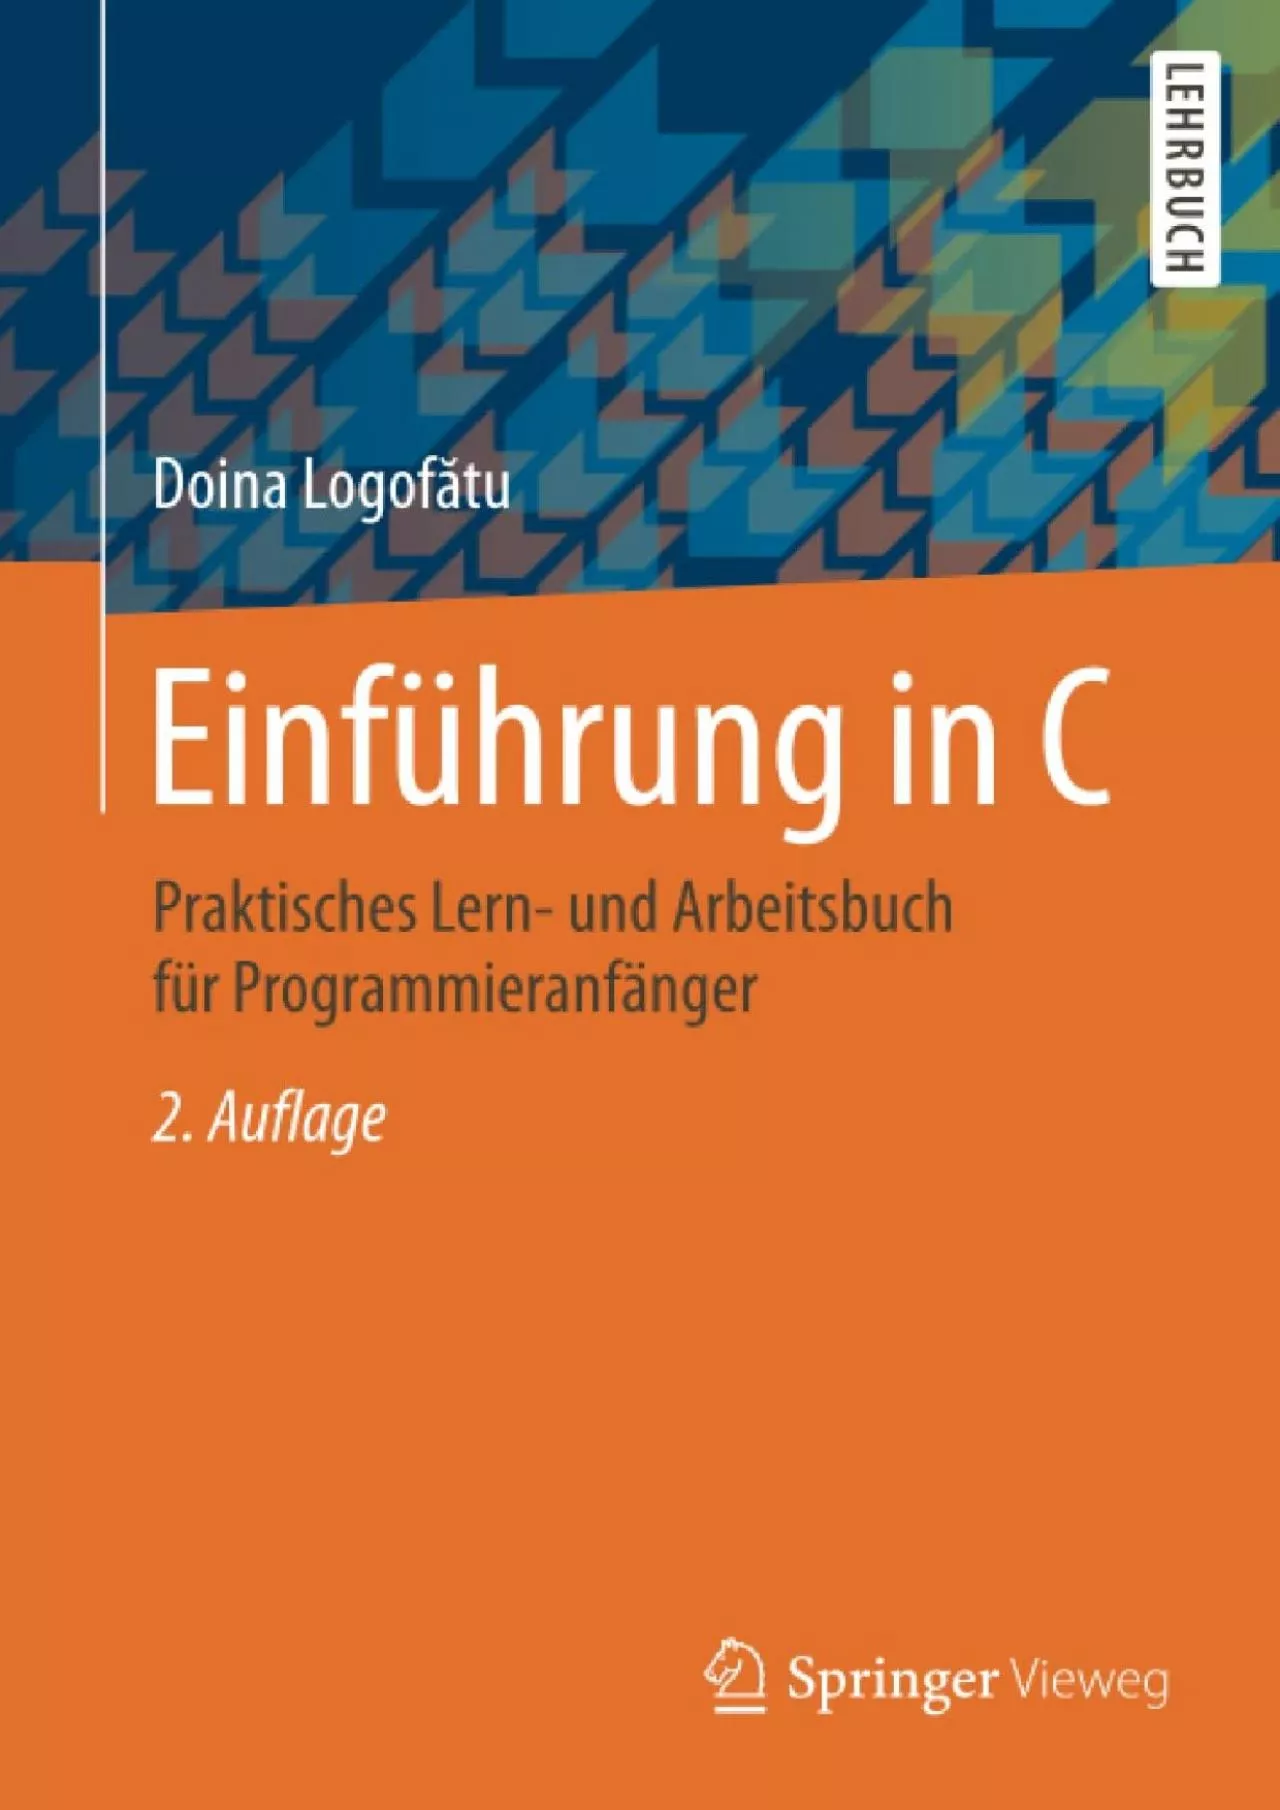 [READ]-Einführung in C: Praktisches Lern- und Arbeitsbuch für Programmieranfänger (German